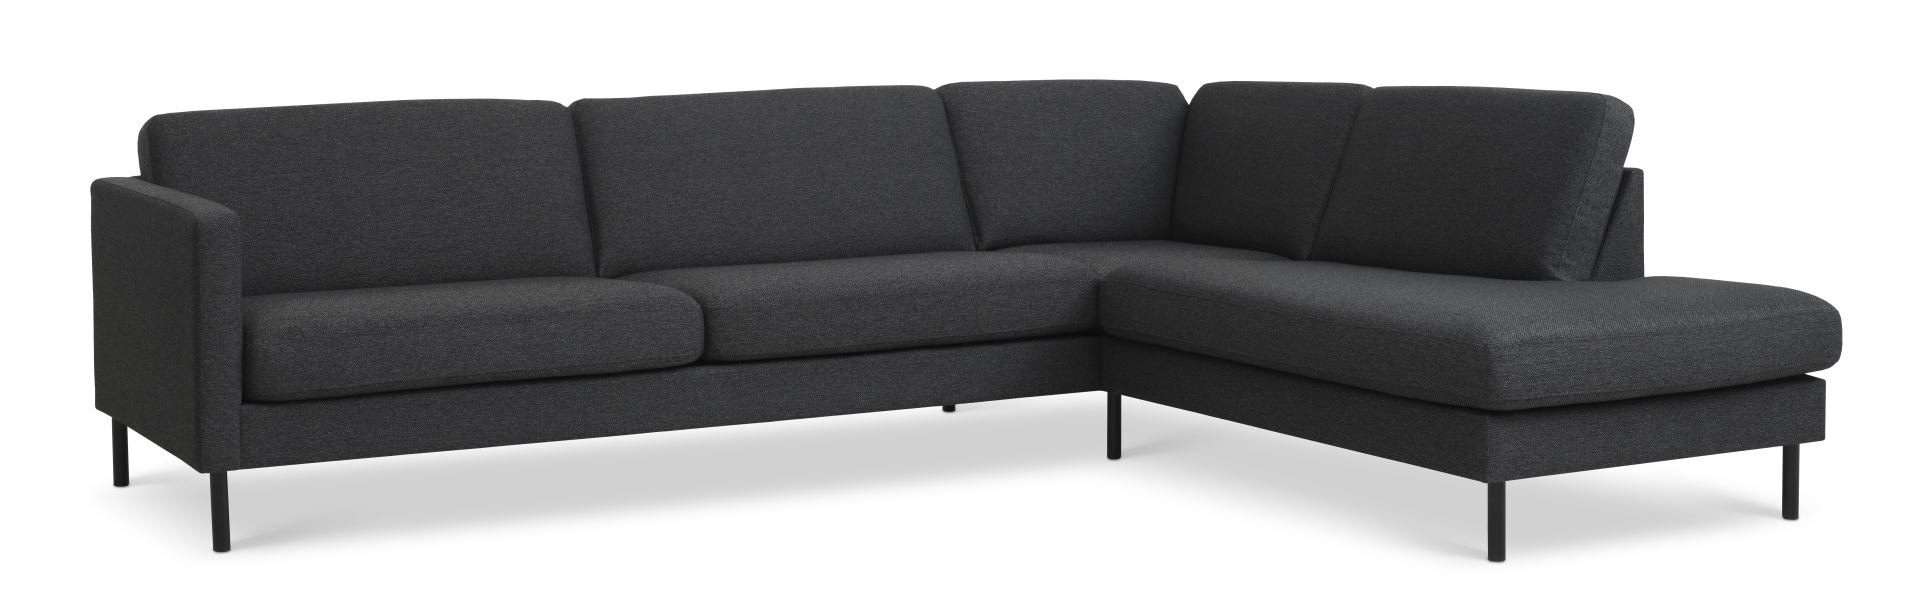 Ask sæt 61 stor OE sofa, m. højre chaiselong - antracitgrå polyester stof og sort metal